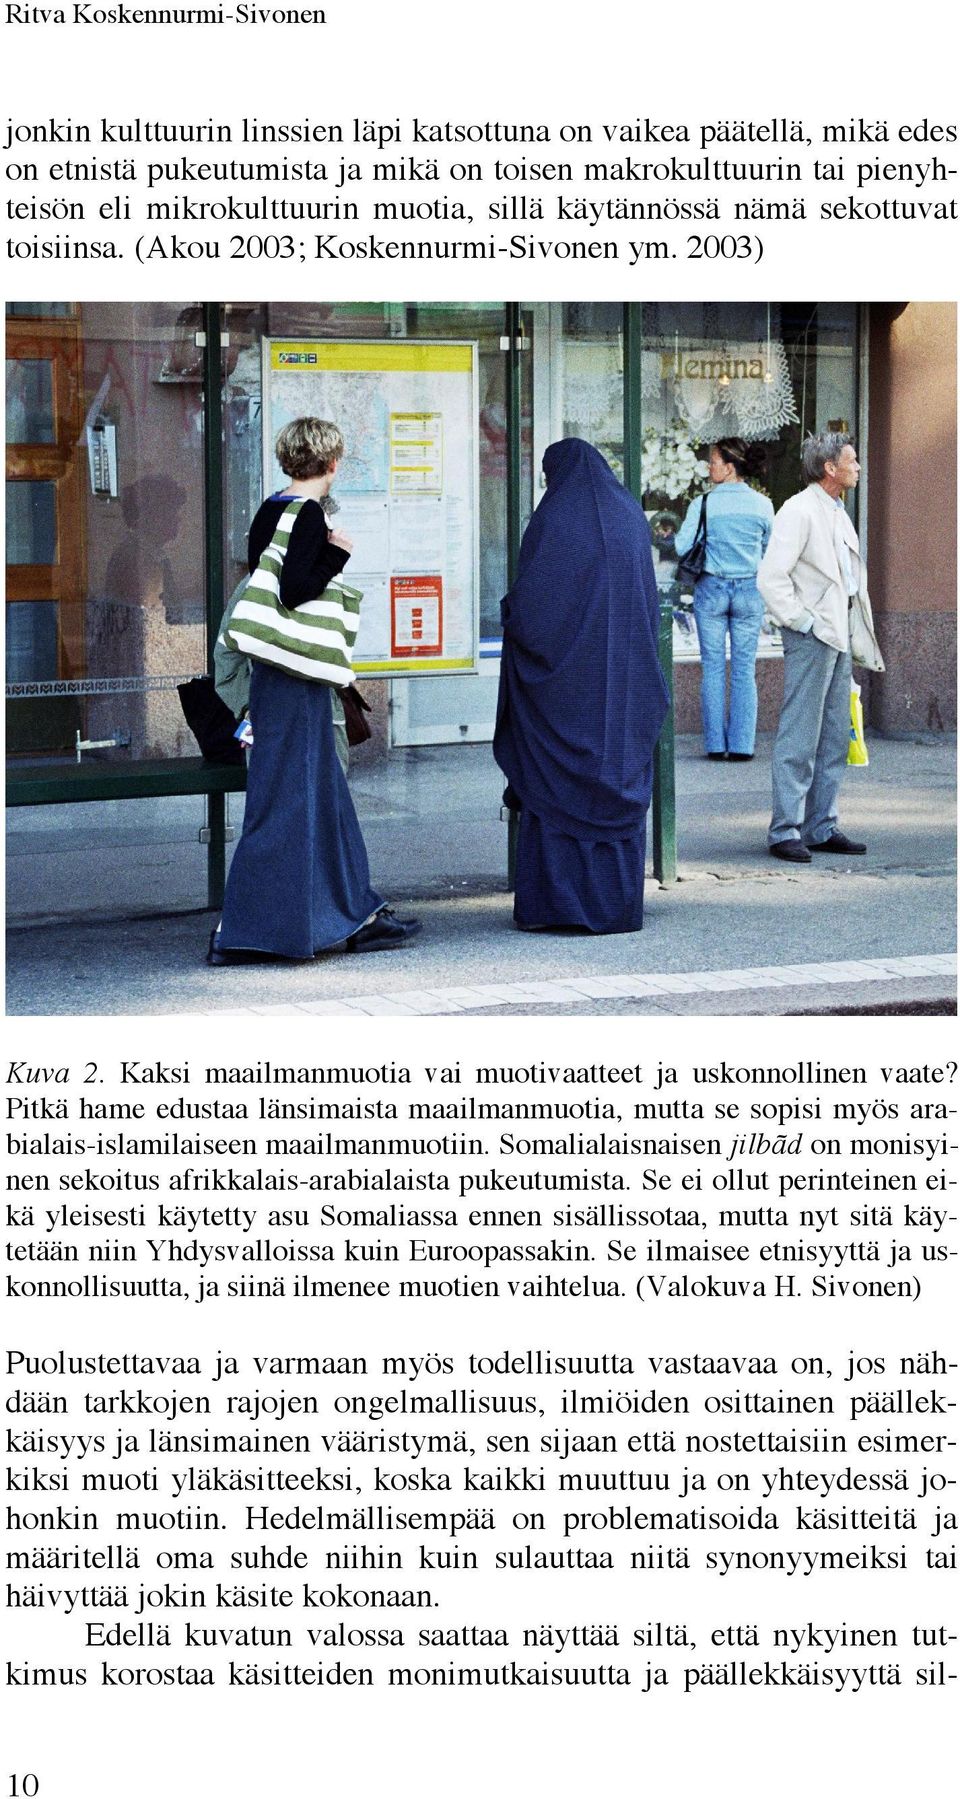 Pitkä hame edustaa länsimaista maailmanmuotia, mutta se sopisi myös arabialais-islamilaiseen maailmanmuotiin. Somalialaisnaisen jilbãd on monisyinen sekoitus afrikkalais-arabialaista pukeutumista.